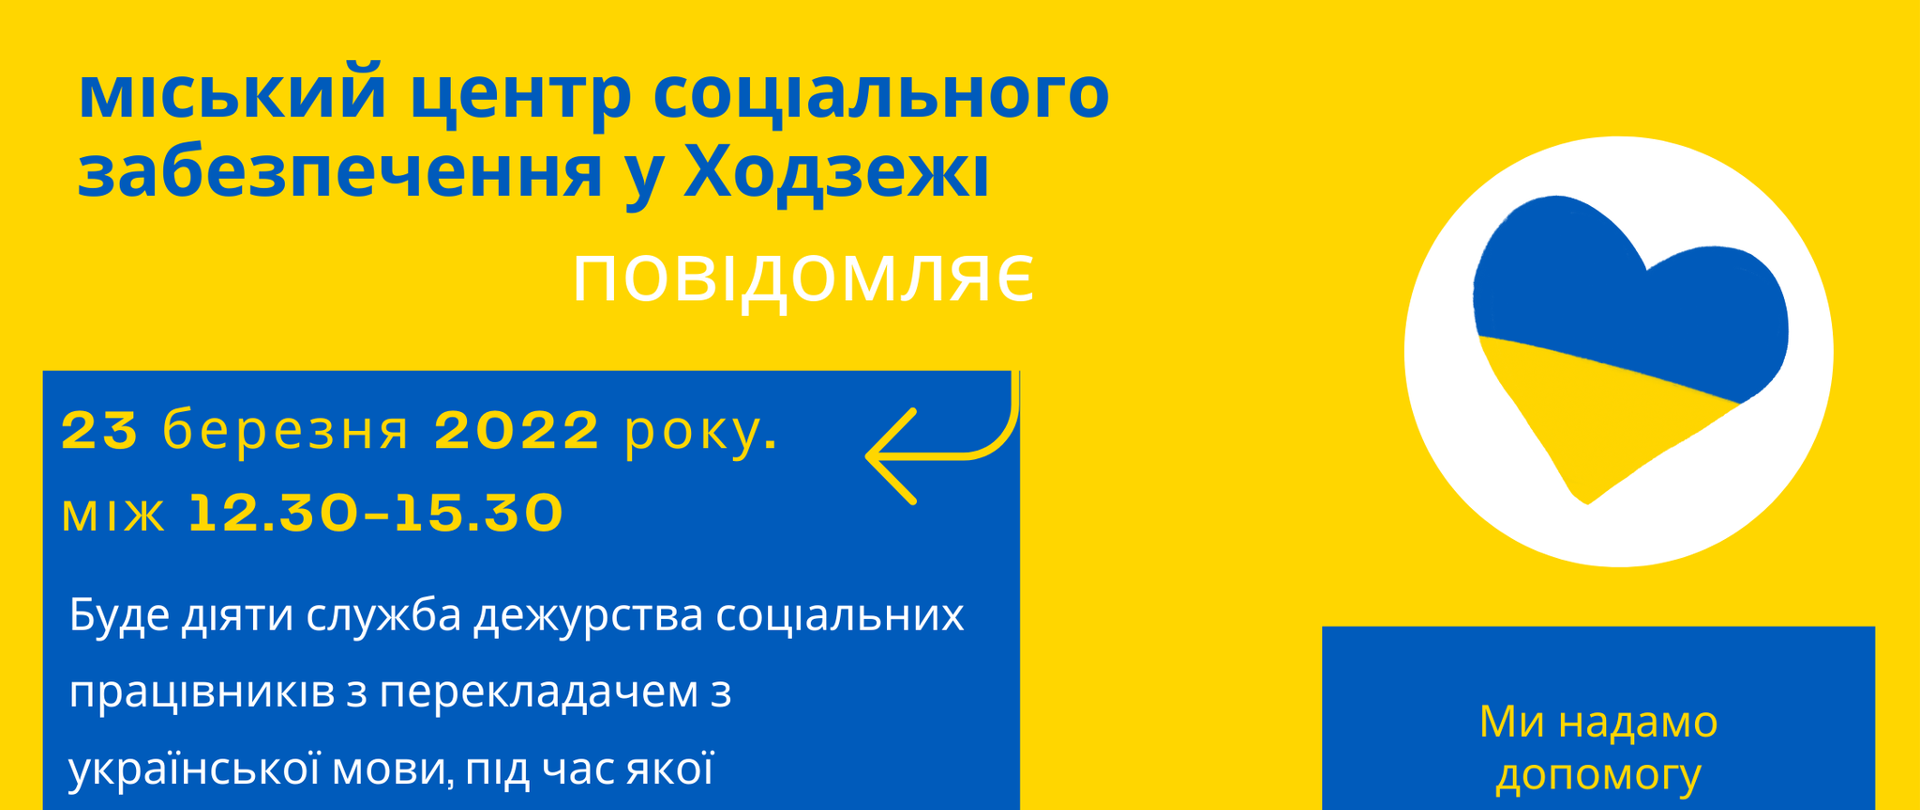 Plakat w języku ukraińskim - pomoc dla Ukraińców przebywających w Chodzieży 